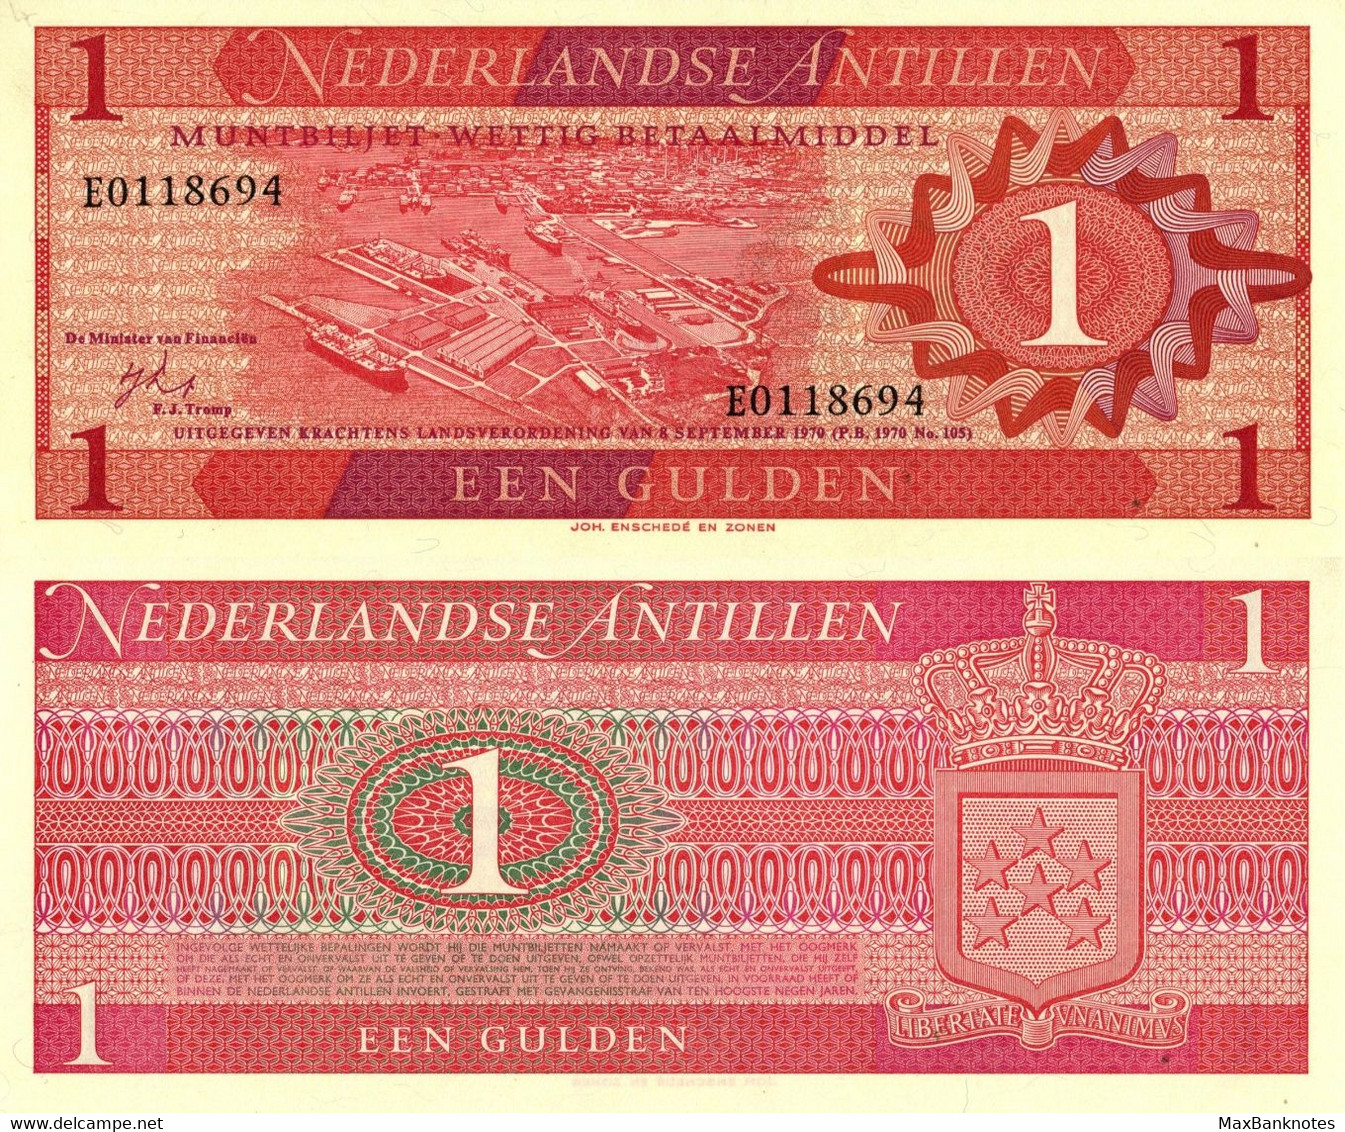 Netherlands Antilles / 1 Gulden / 1970 / P-20(a) / UNC - East Carribeans